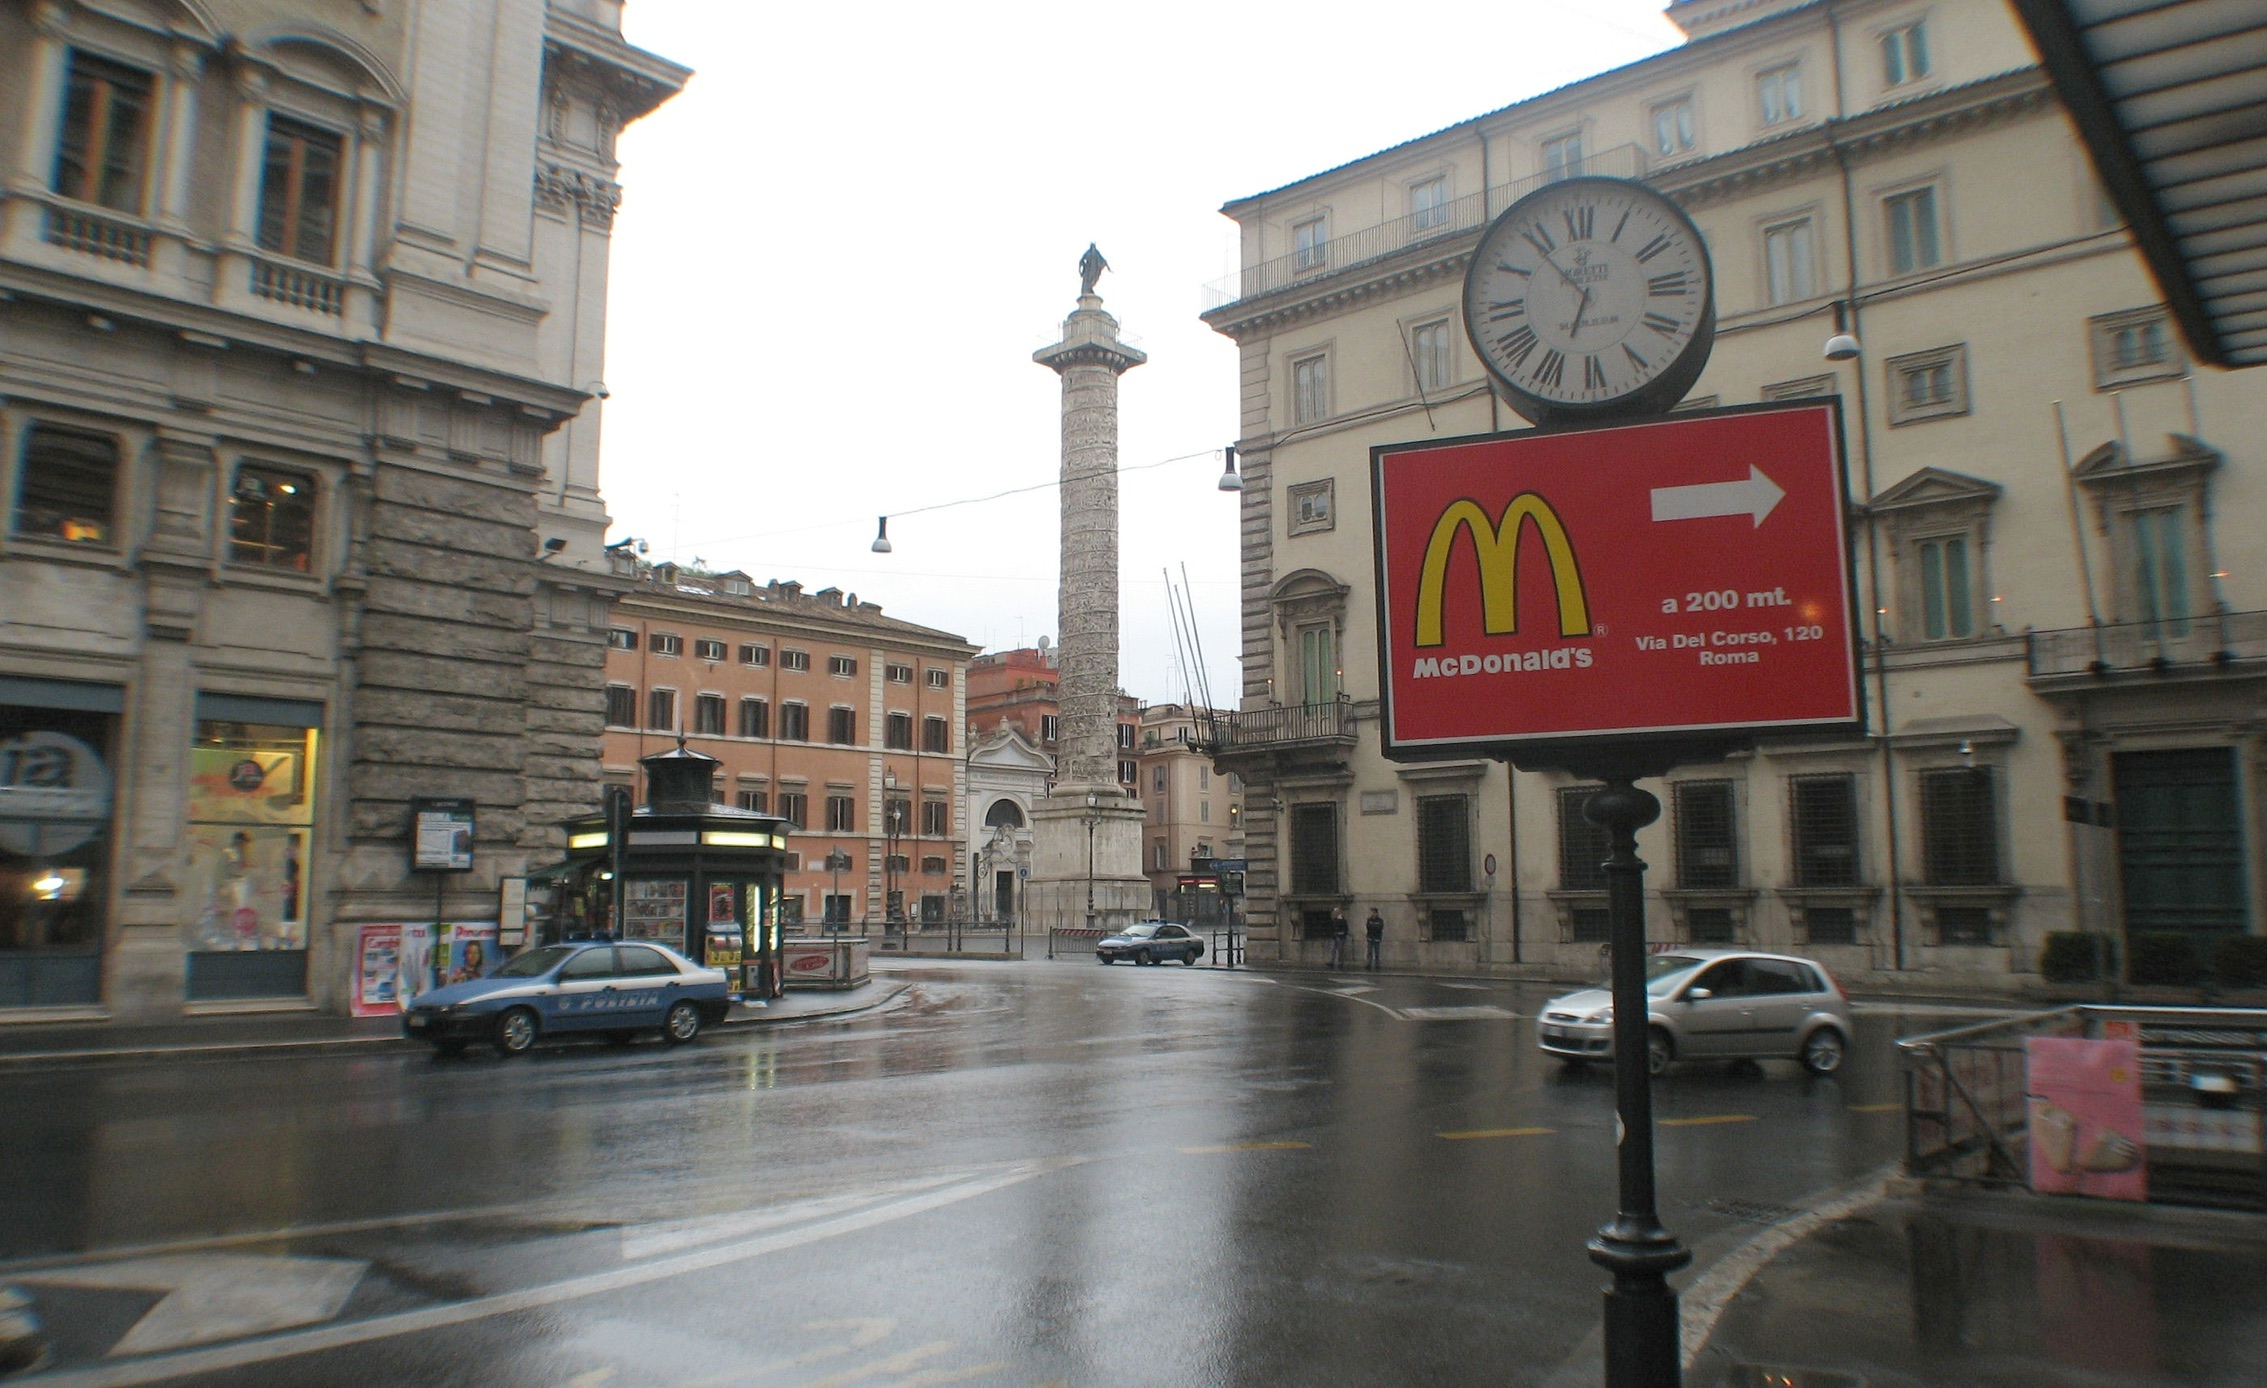 Вот такой указатель теперь можно увидеть в нескольких шагах от площади Святого Петра Источник: http://www.myrepublica.com